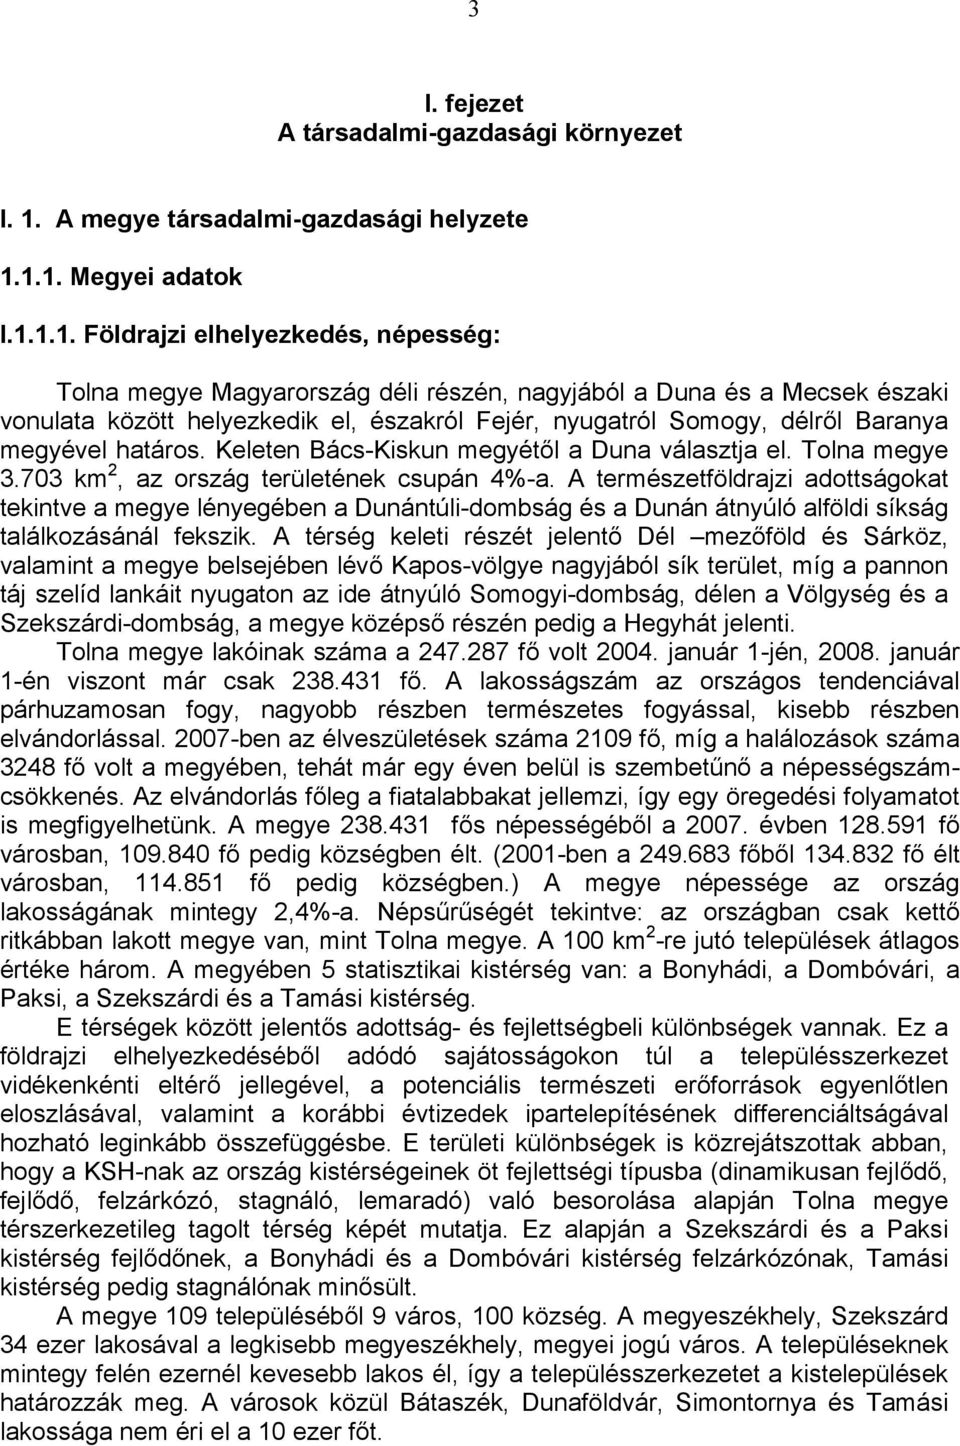 1.1. Megyei adatok I.1.1.1. Földrajzi elhelyezkedés, népesség: Tolna megye Magyarország déli részén, nagyjából a Duna és a Mecsek északi vonulata között helyezkedik el, északról Fejér, nyugatról